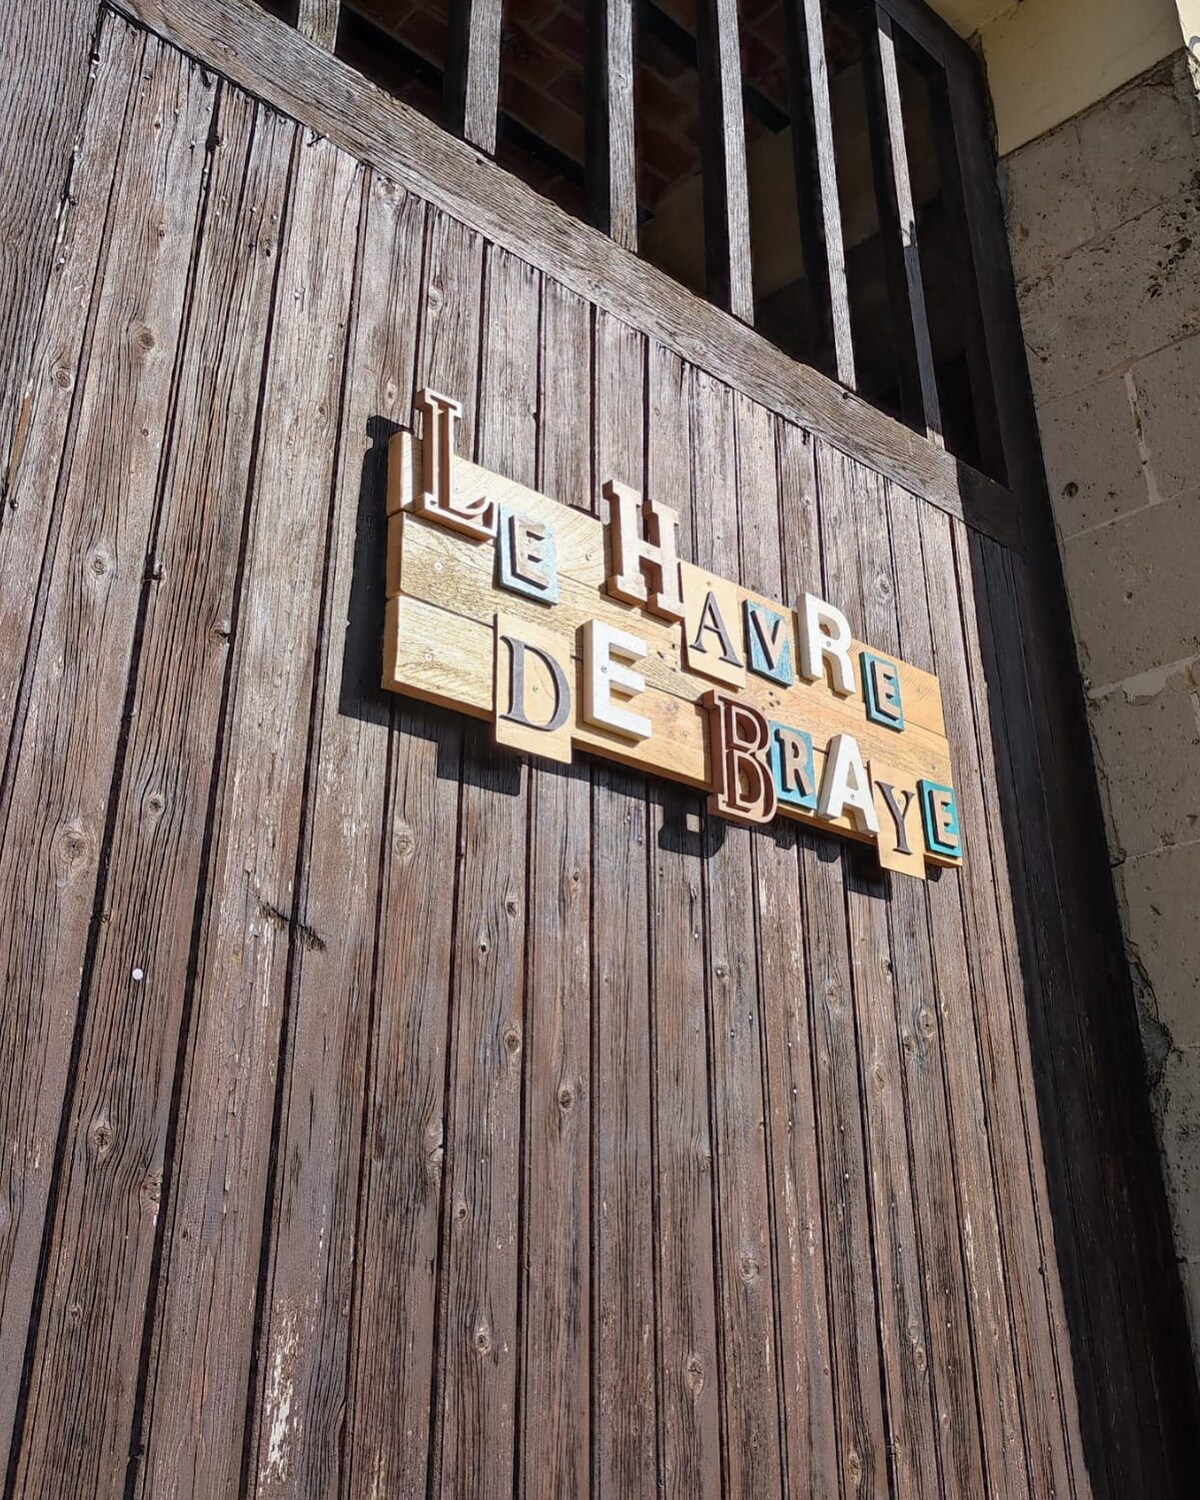 Le Havre de Braye , ancien corps de ferme au vert